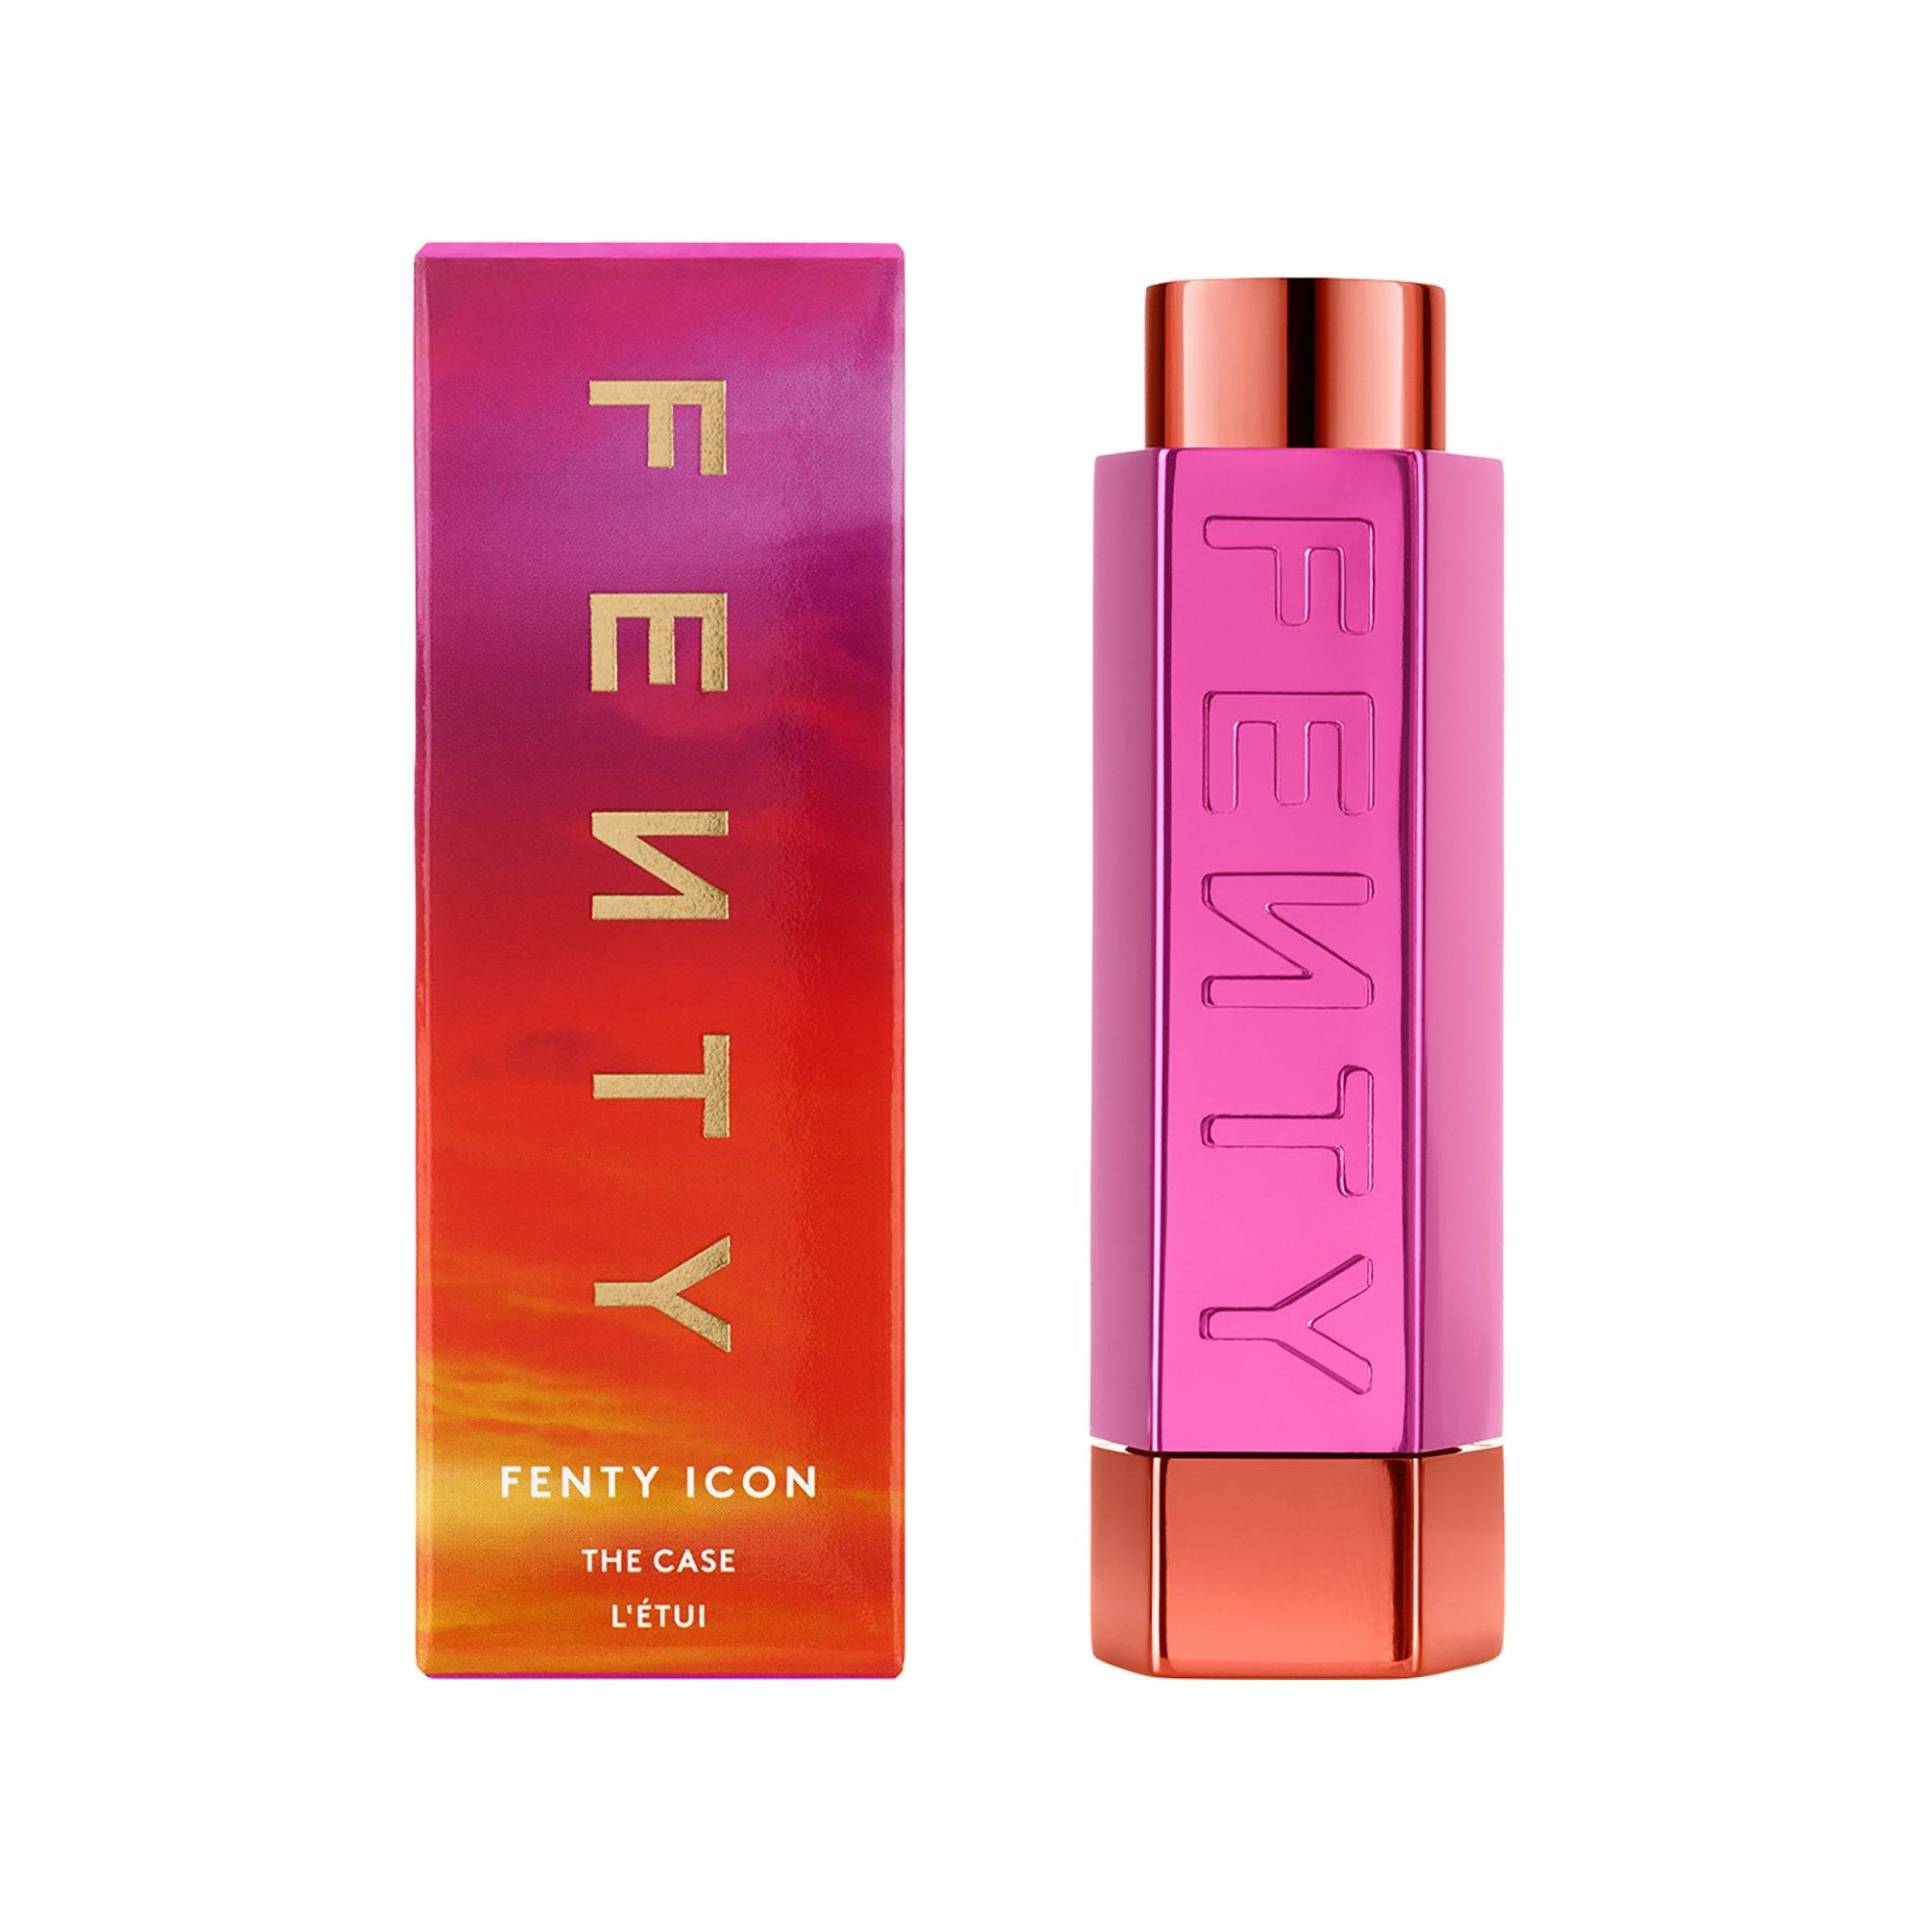 Fenty Icon - Etui Für Halbmatten Lippenstift - Etui Damen Summatime Edition von Fenty Beauty By Rihanna